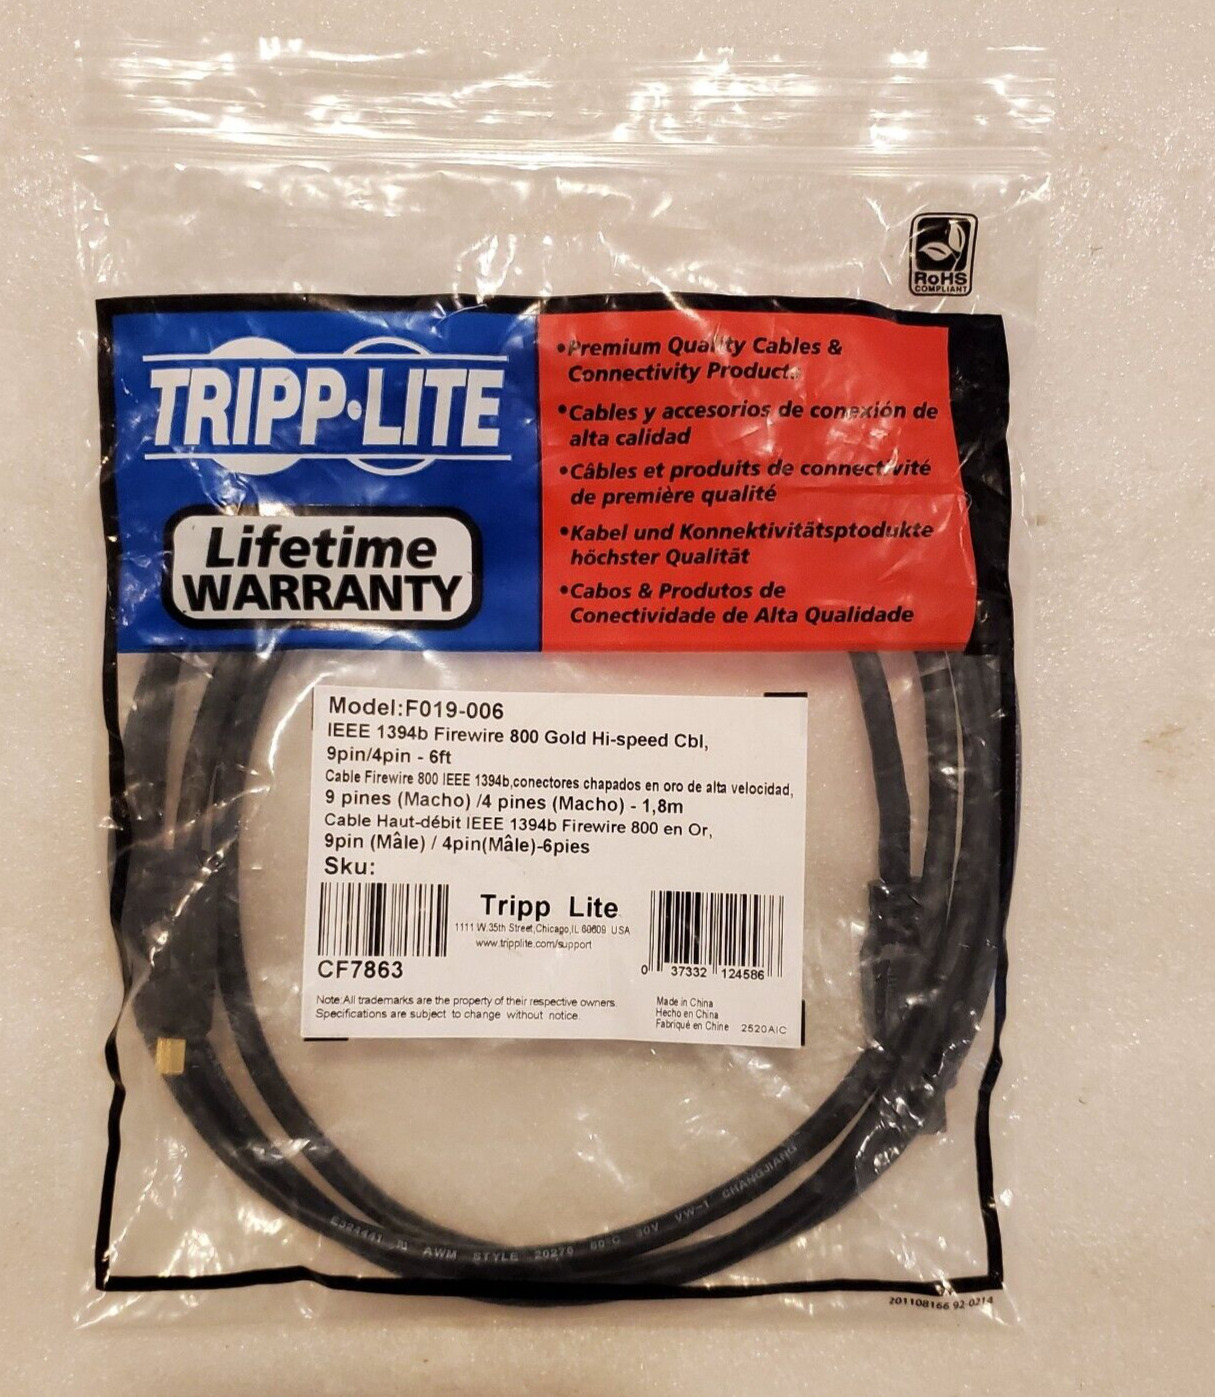 *New* Tripp Lite F019-006 FireWire 800 Gold Hi-speed Cable IEEE 1394b